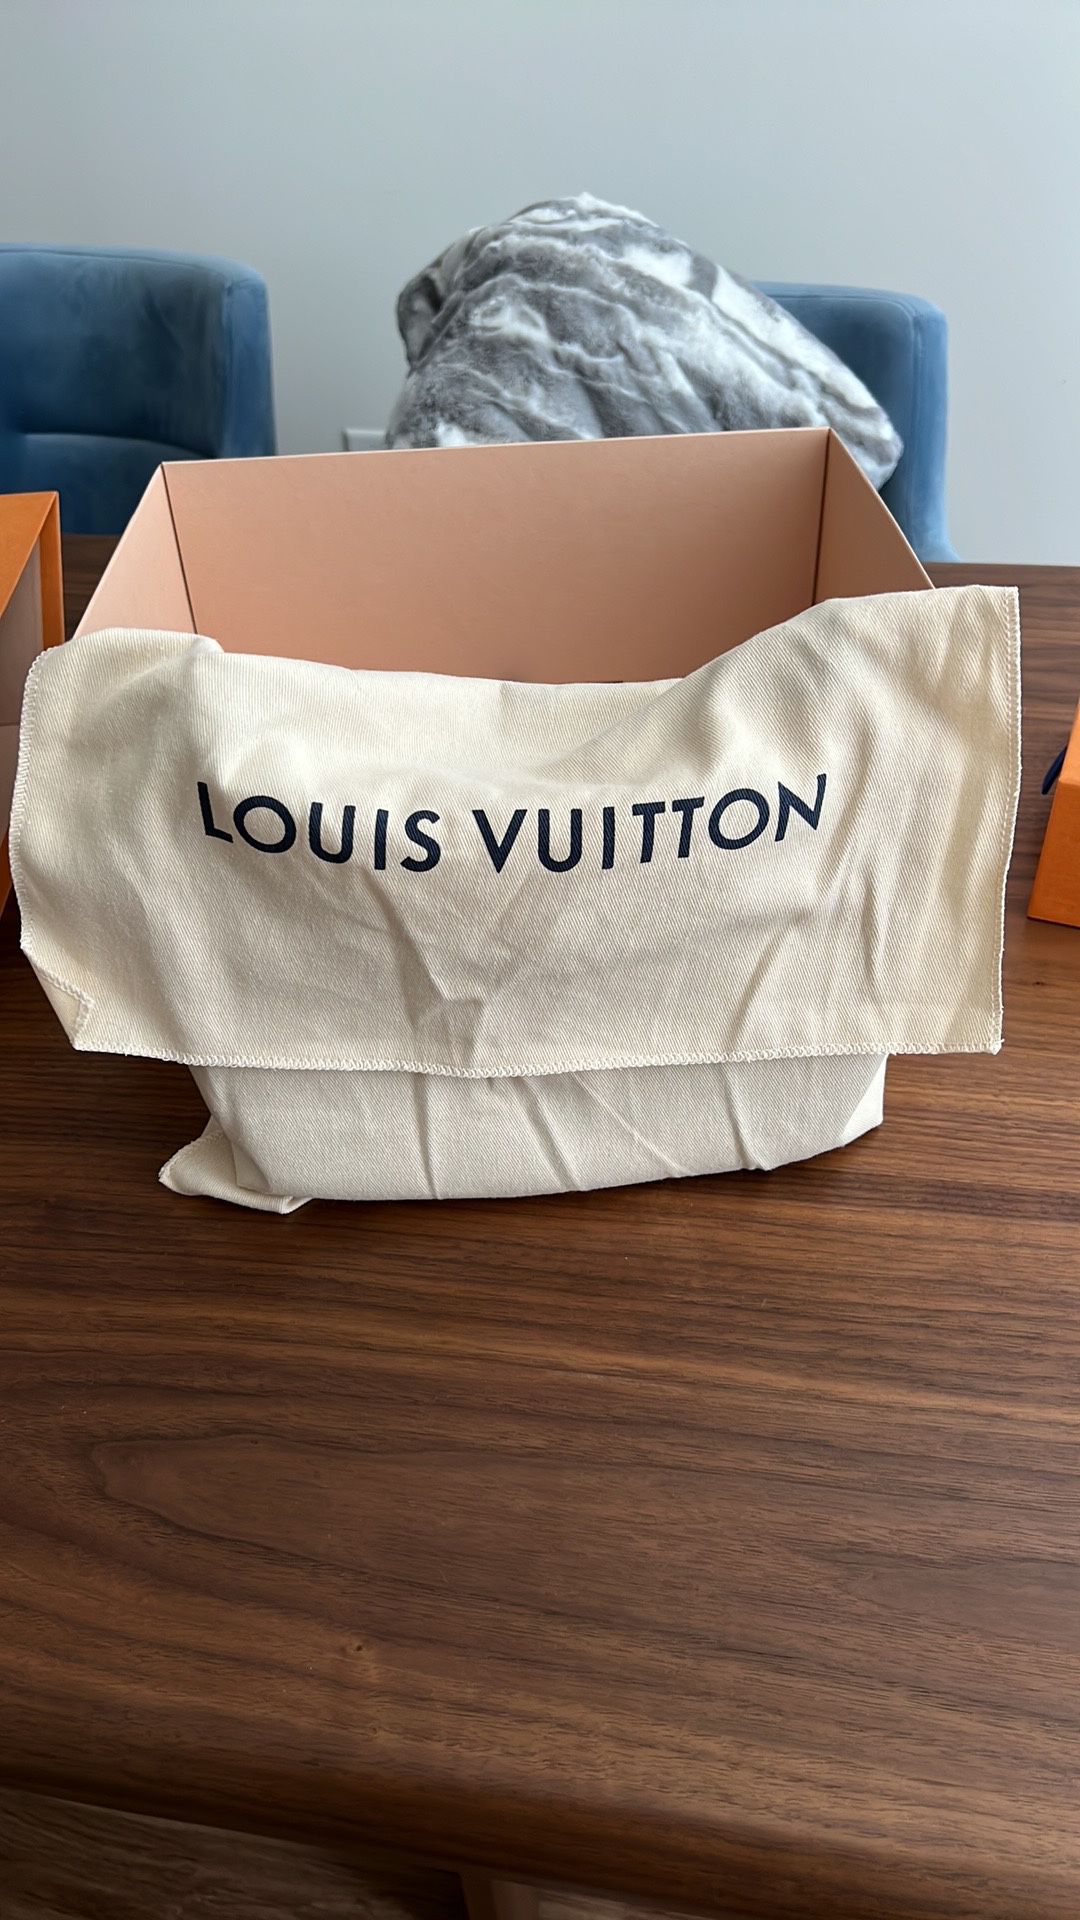 Louis Vuitton Bagatelle for Sale in Hoboken, NJ - OfferUp